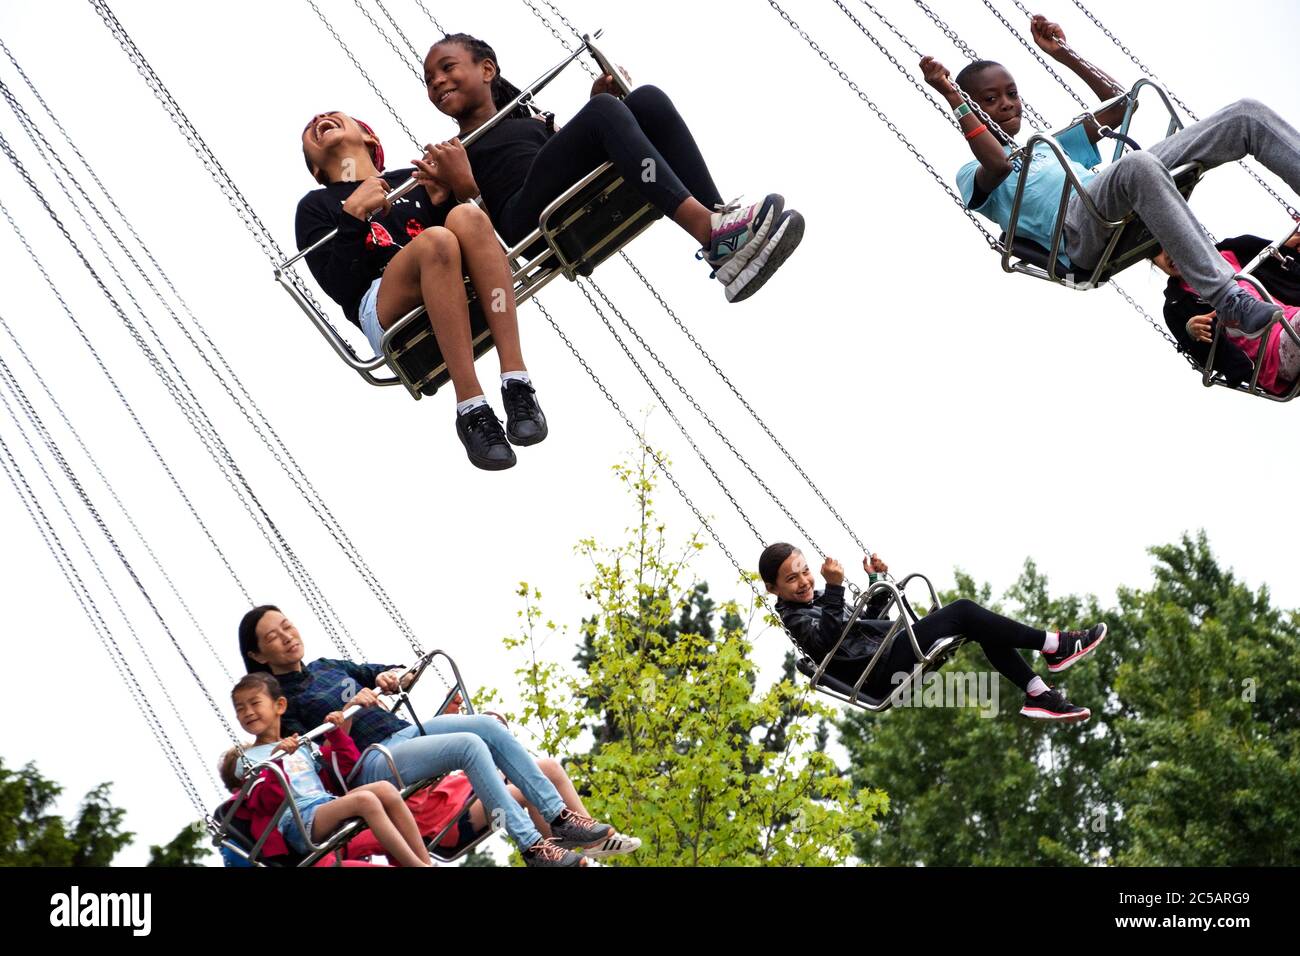 PARIS, FRANCE - 26 mai 2019 : les enfants avec leurs parents s'amusent à faire du carrousel à chaînes au jardin d'Acclimatation, parc d'attractions populaire pour enfants Banque D'Images